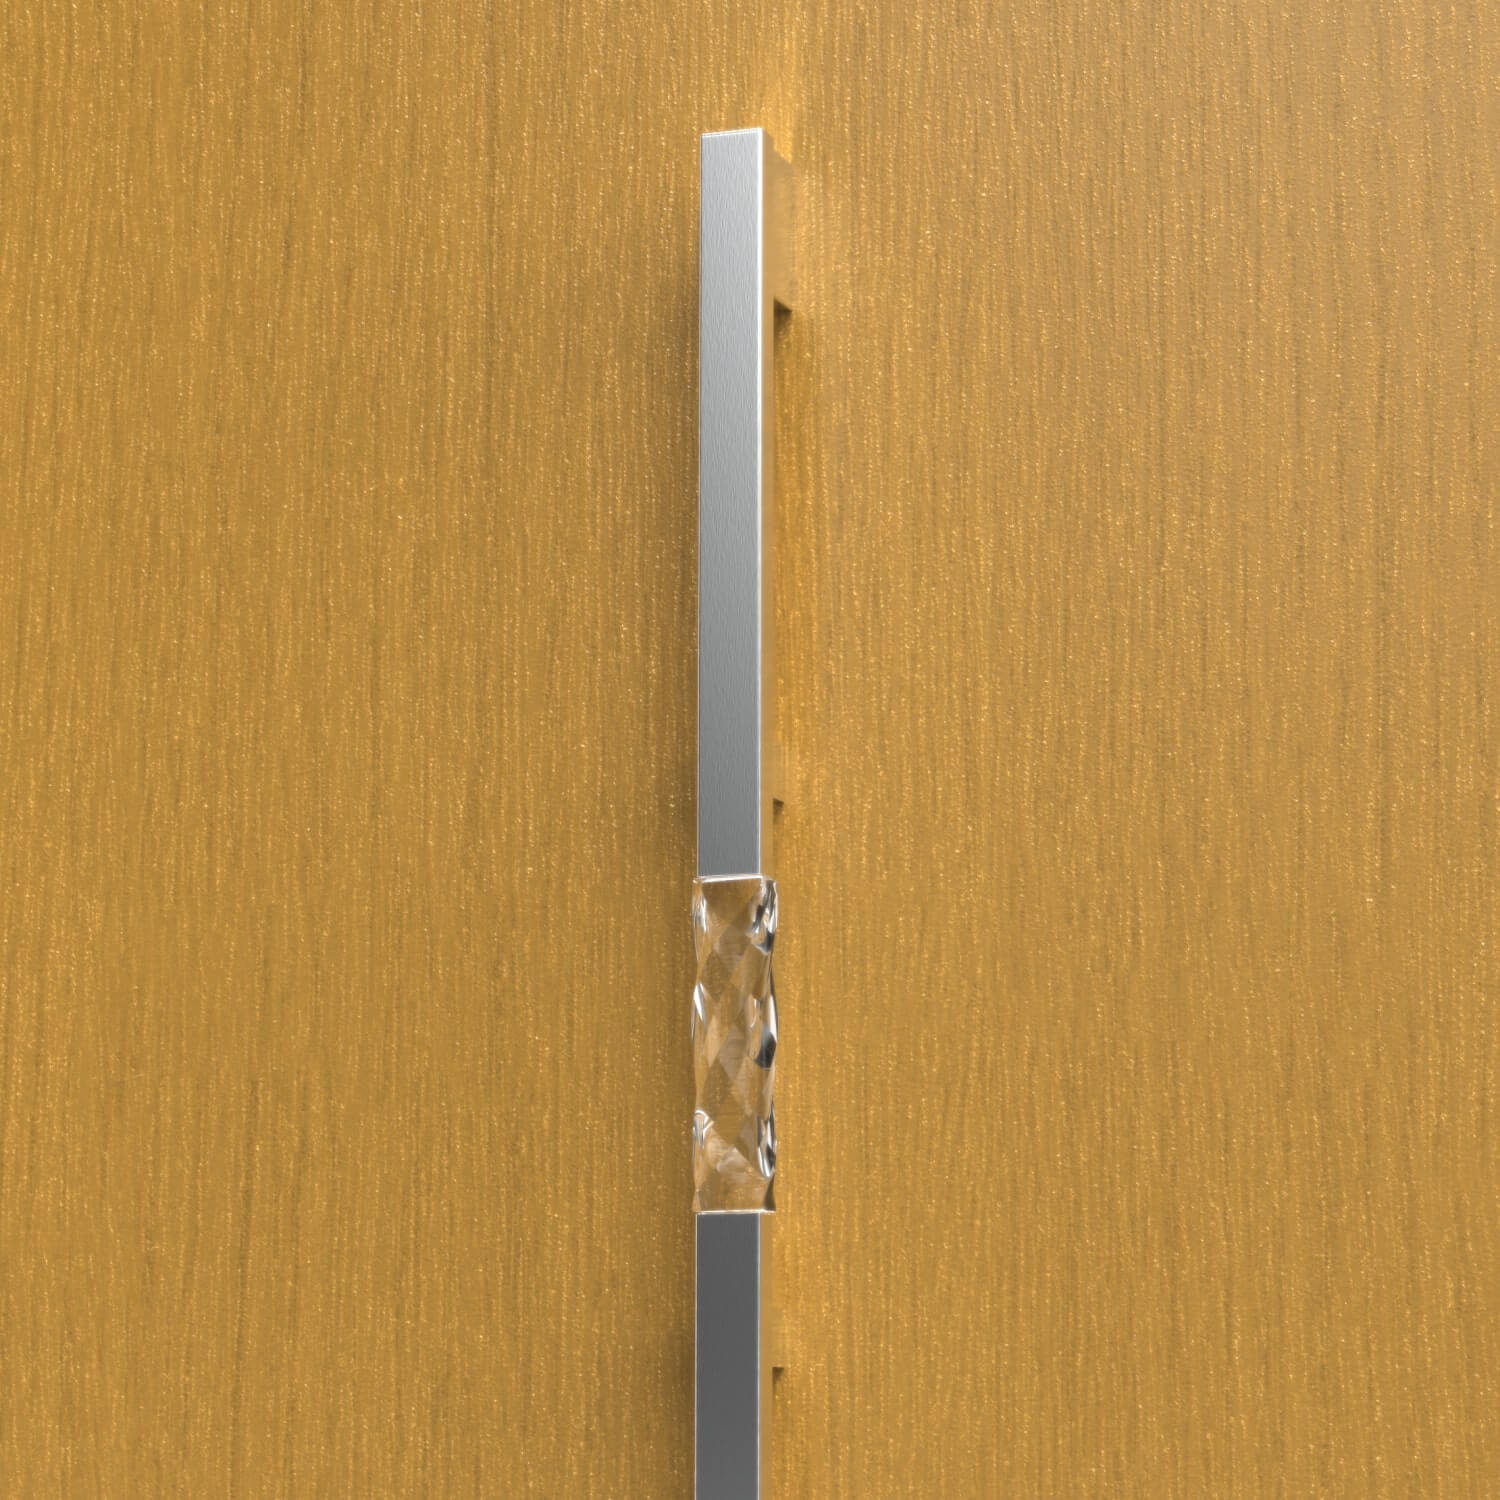 Wooden front door handle with glass insert